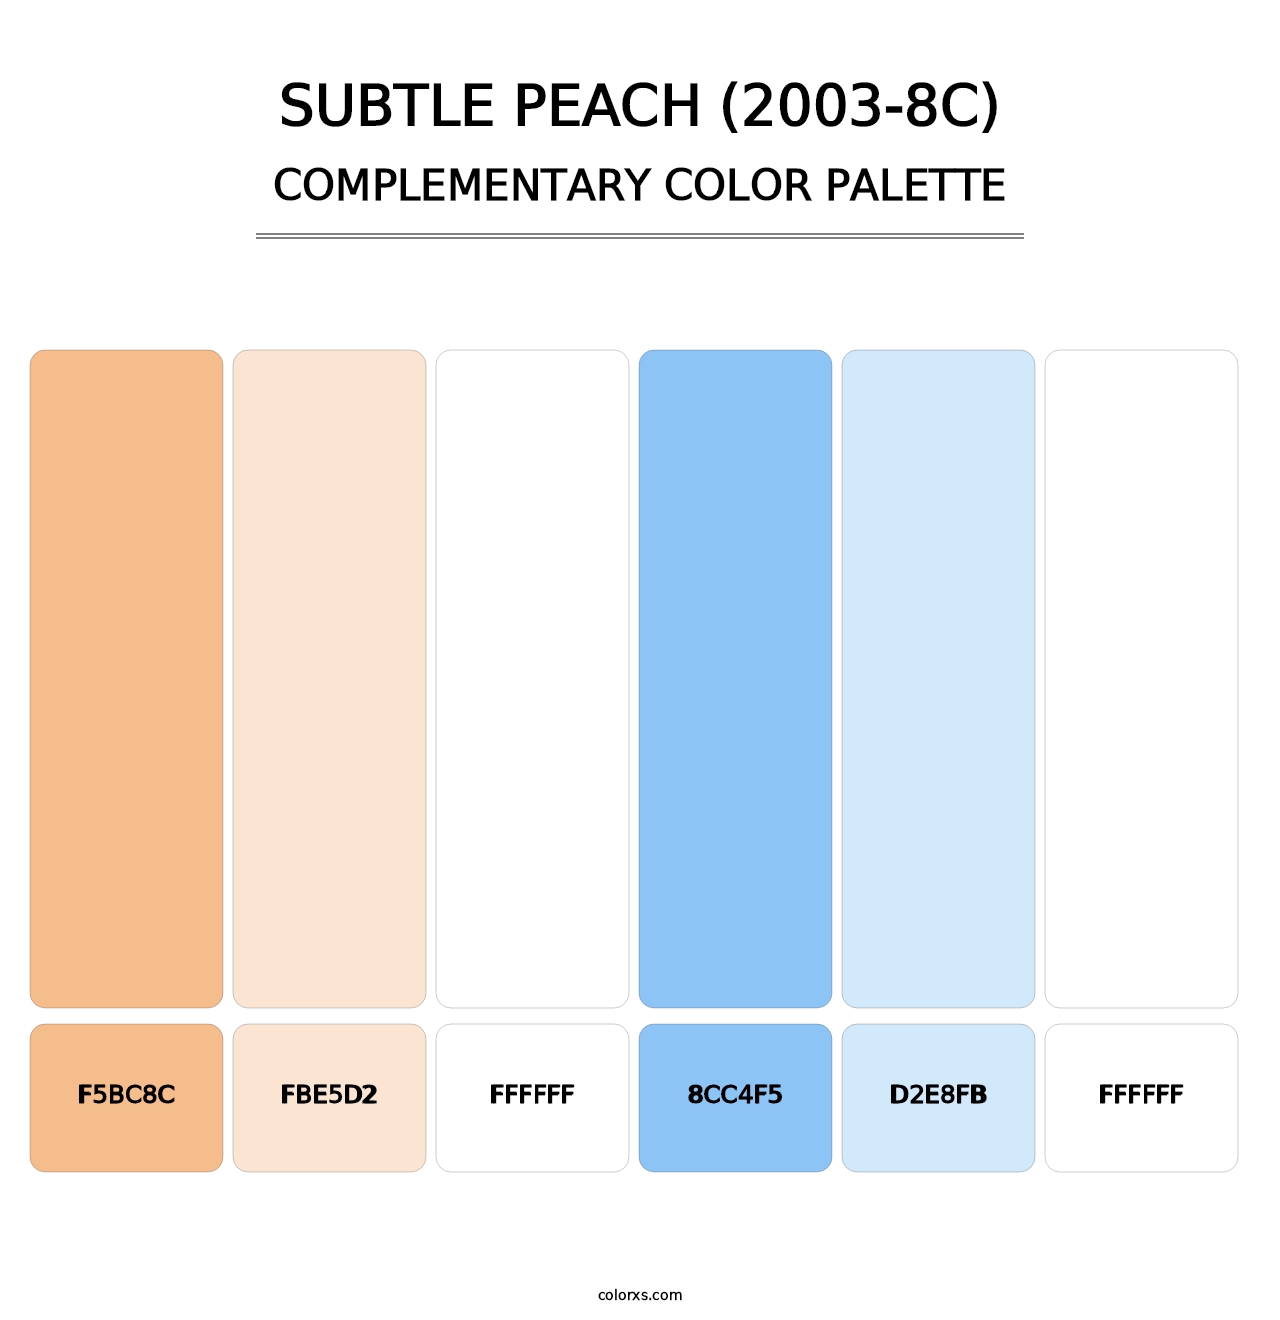 Subtle Peach (2003-8C) - Complementary Color Palette